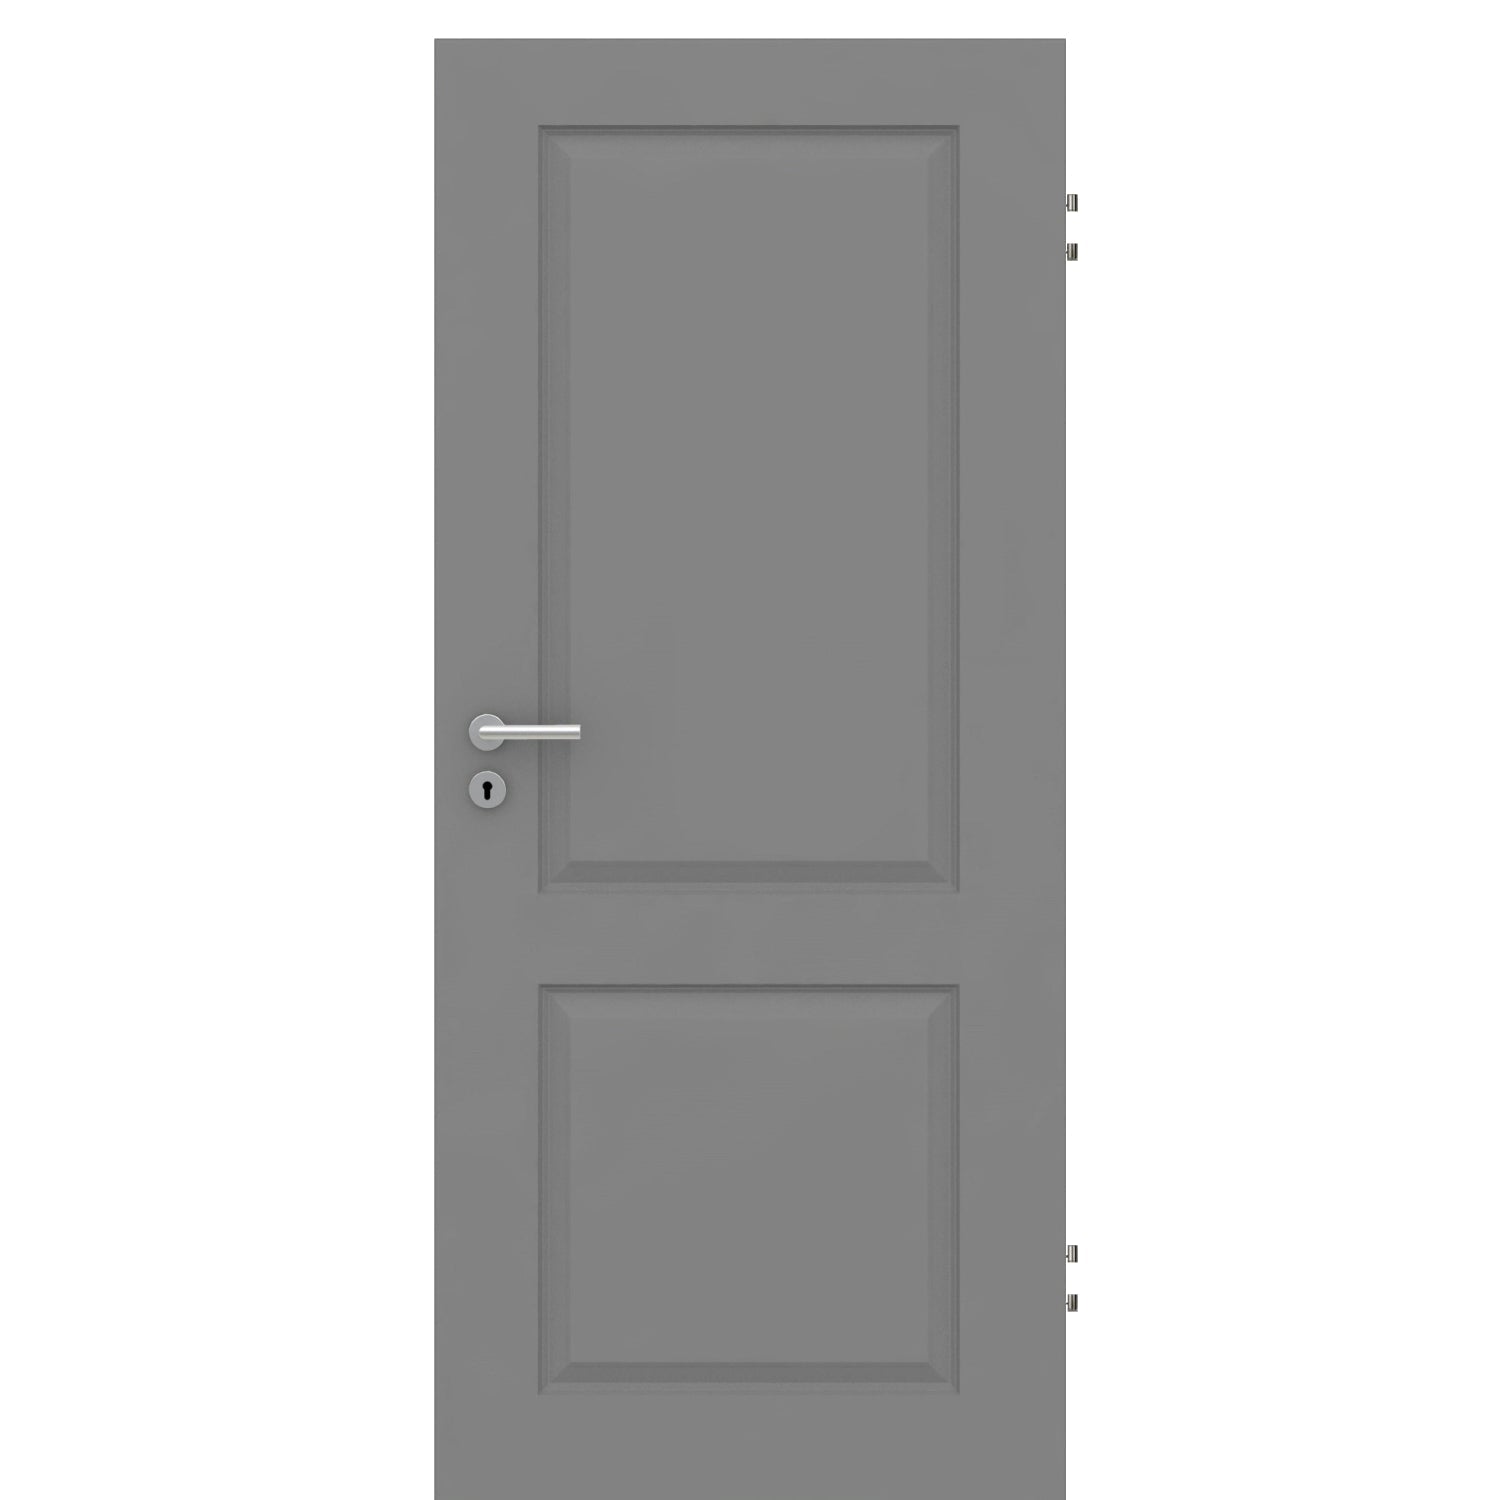 Wohnungseingangstür grau 2 Kassetten Designkante SK1 / KK3 - Modell Stiltür K27